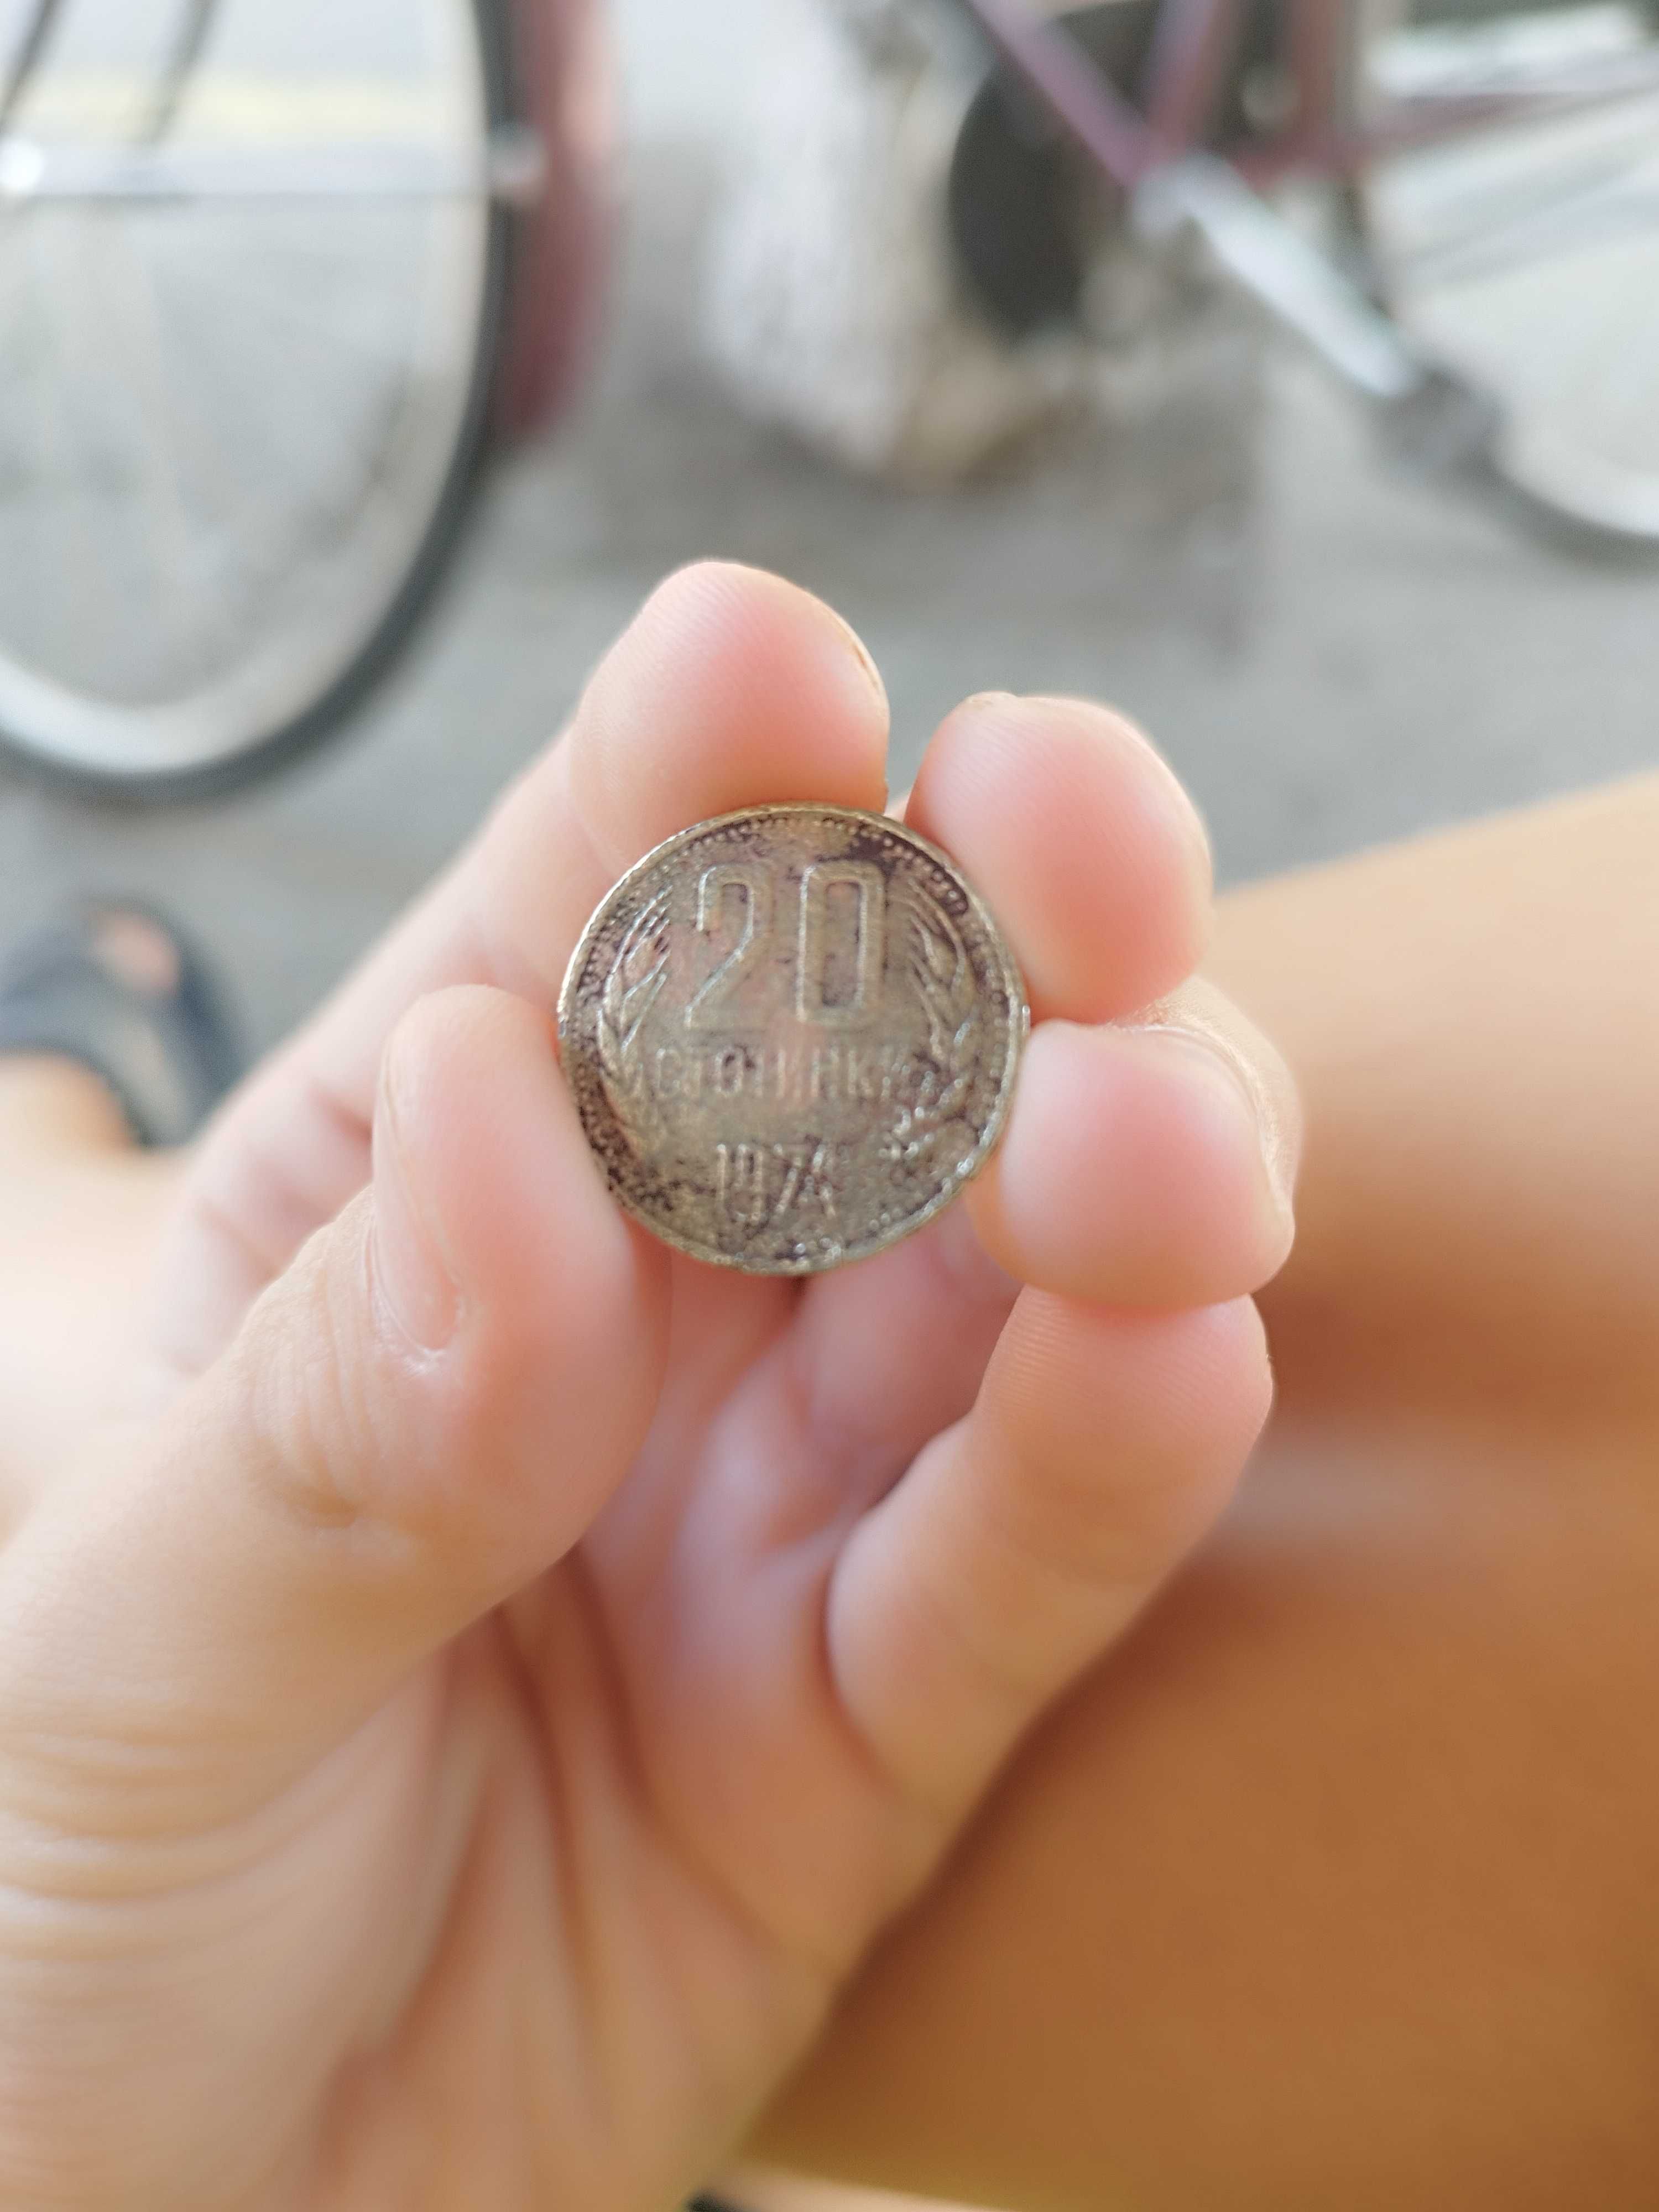 Тази монета е от 1974 година .